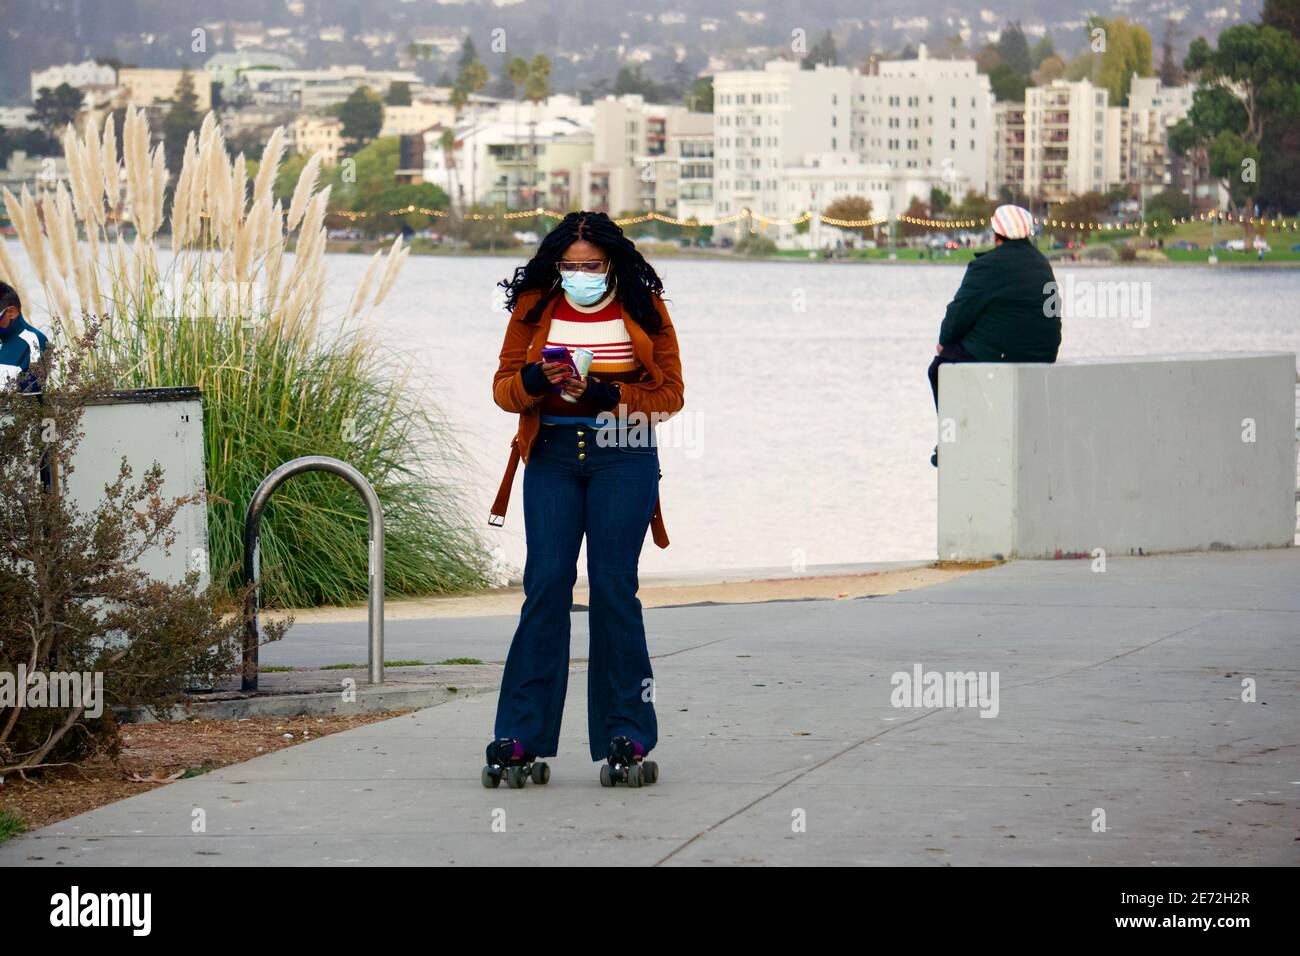 Donna su pattini a rotelle che guardano il suo telefono delle cellule al lago Merritt che dirige verso un raduno esterno del pattino a rotelle. Oakland, California, Stati Uniti Foto Stock